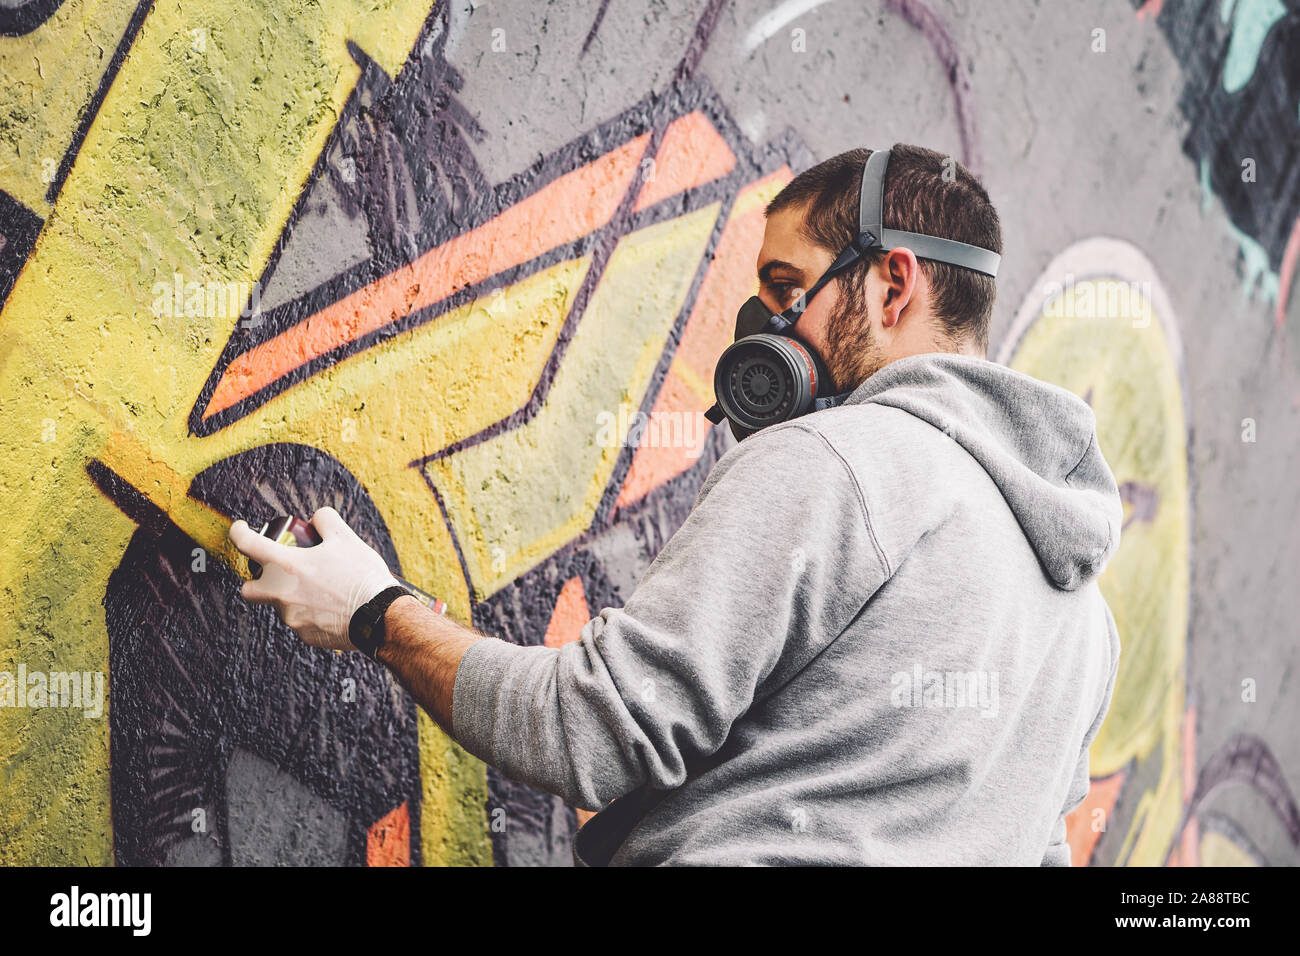 L'artiste graffiti de rue avec une peinture aérosol couleur un graffiti sur le mur de la ville, le mode de vie urbain - concept art de rue Banque D'Images